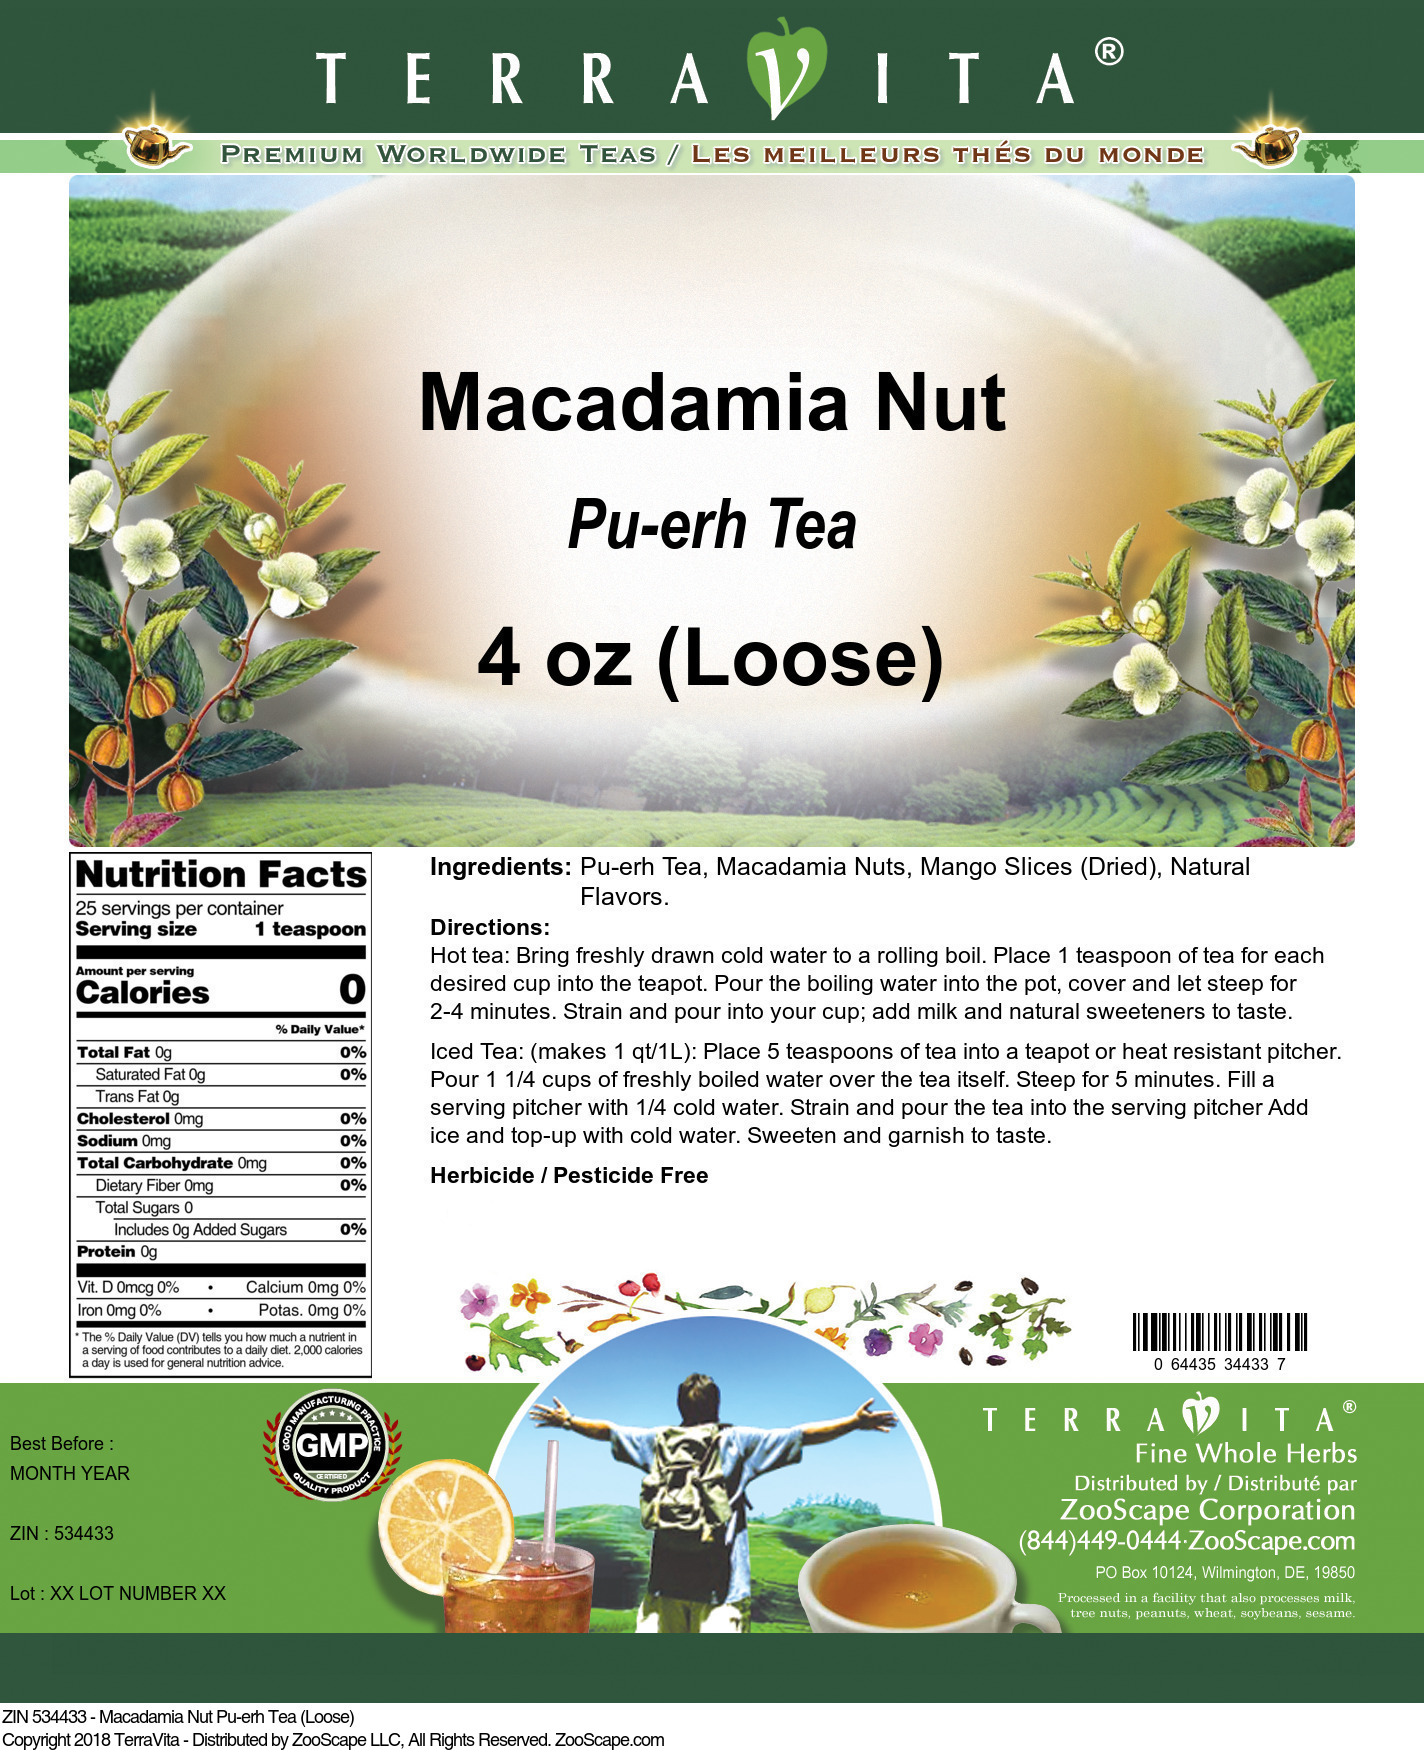 Macadamia Nut Pu-erh Tea (Loose) - Label